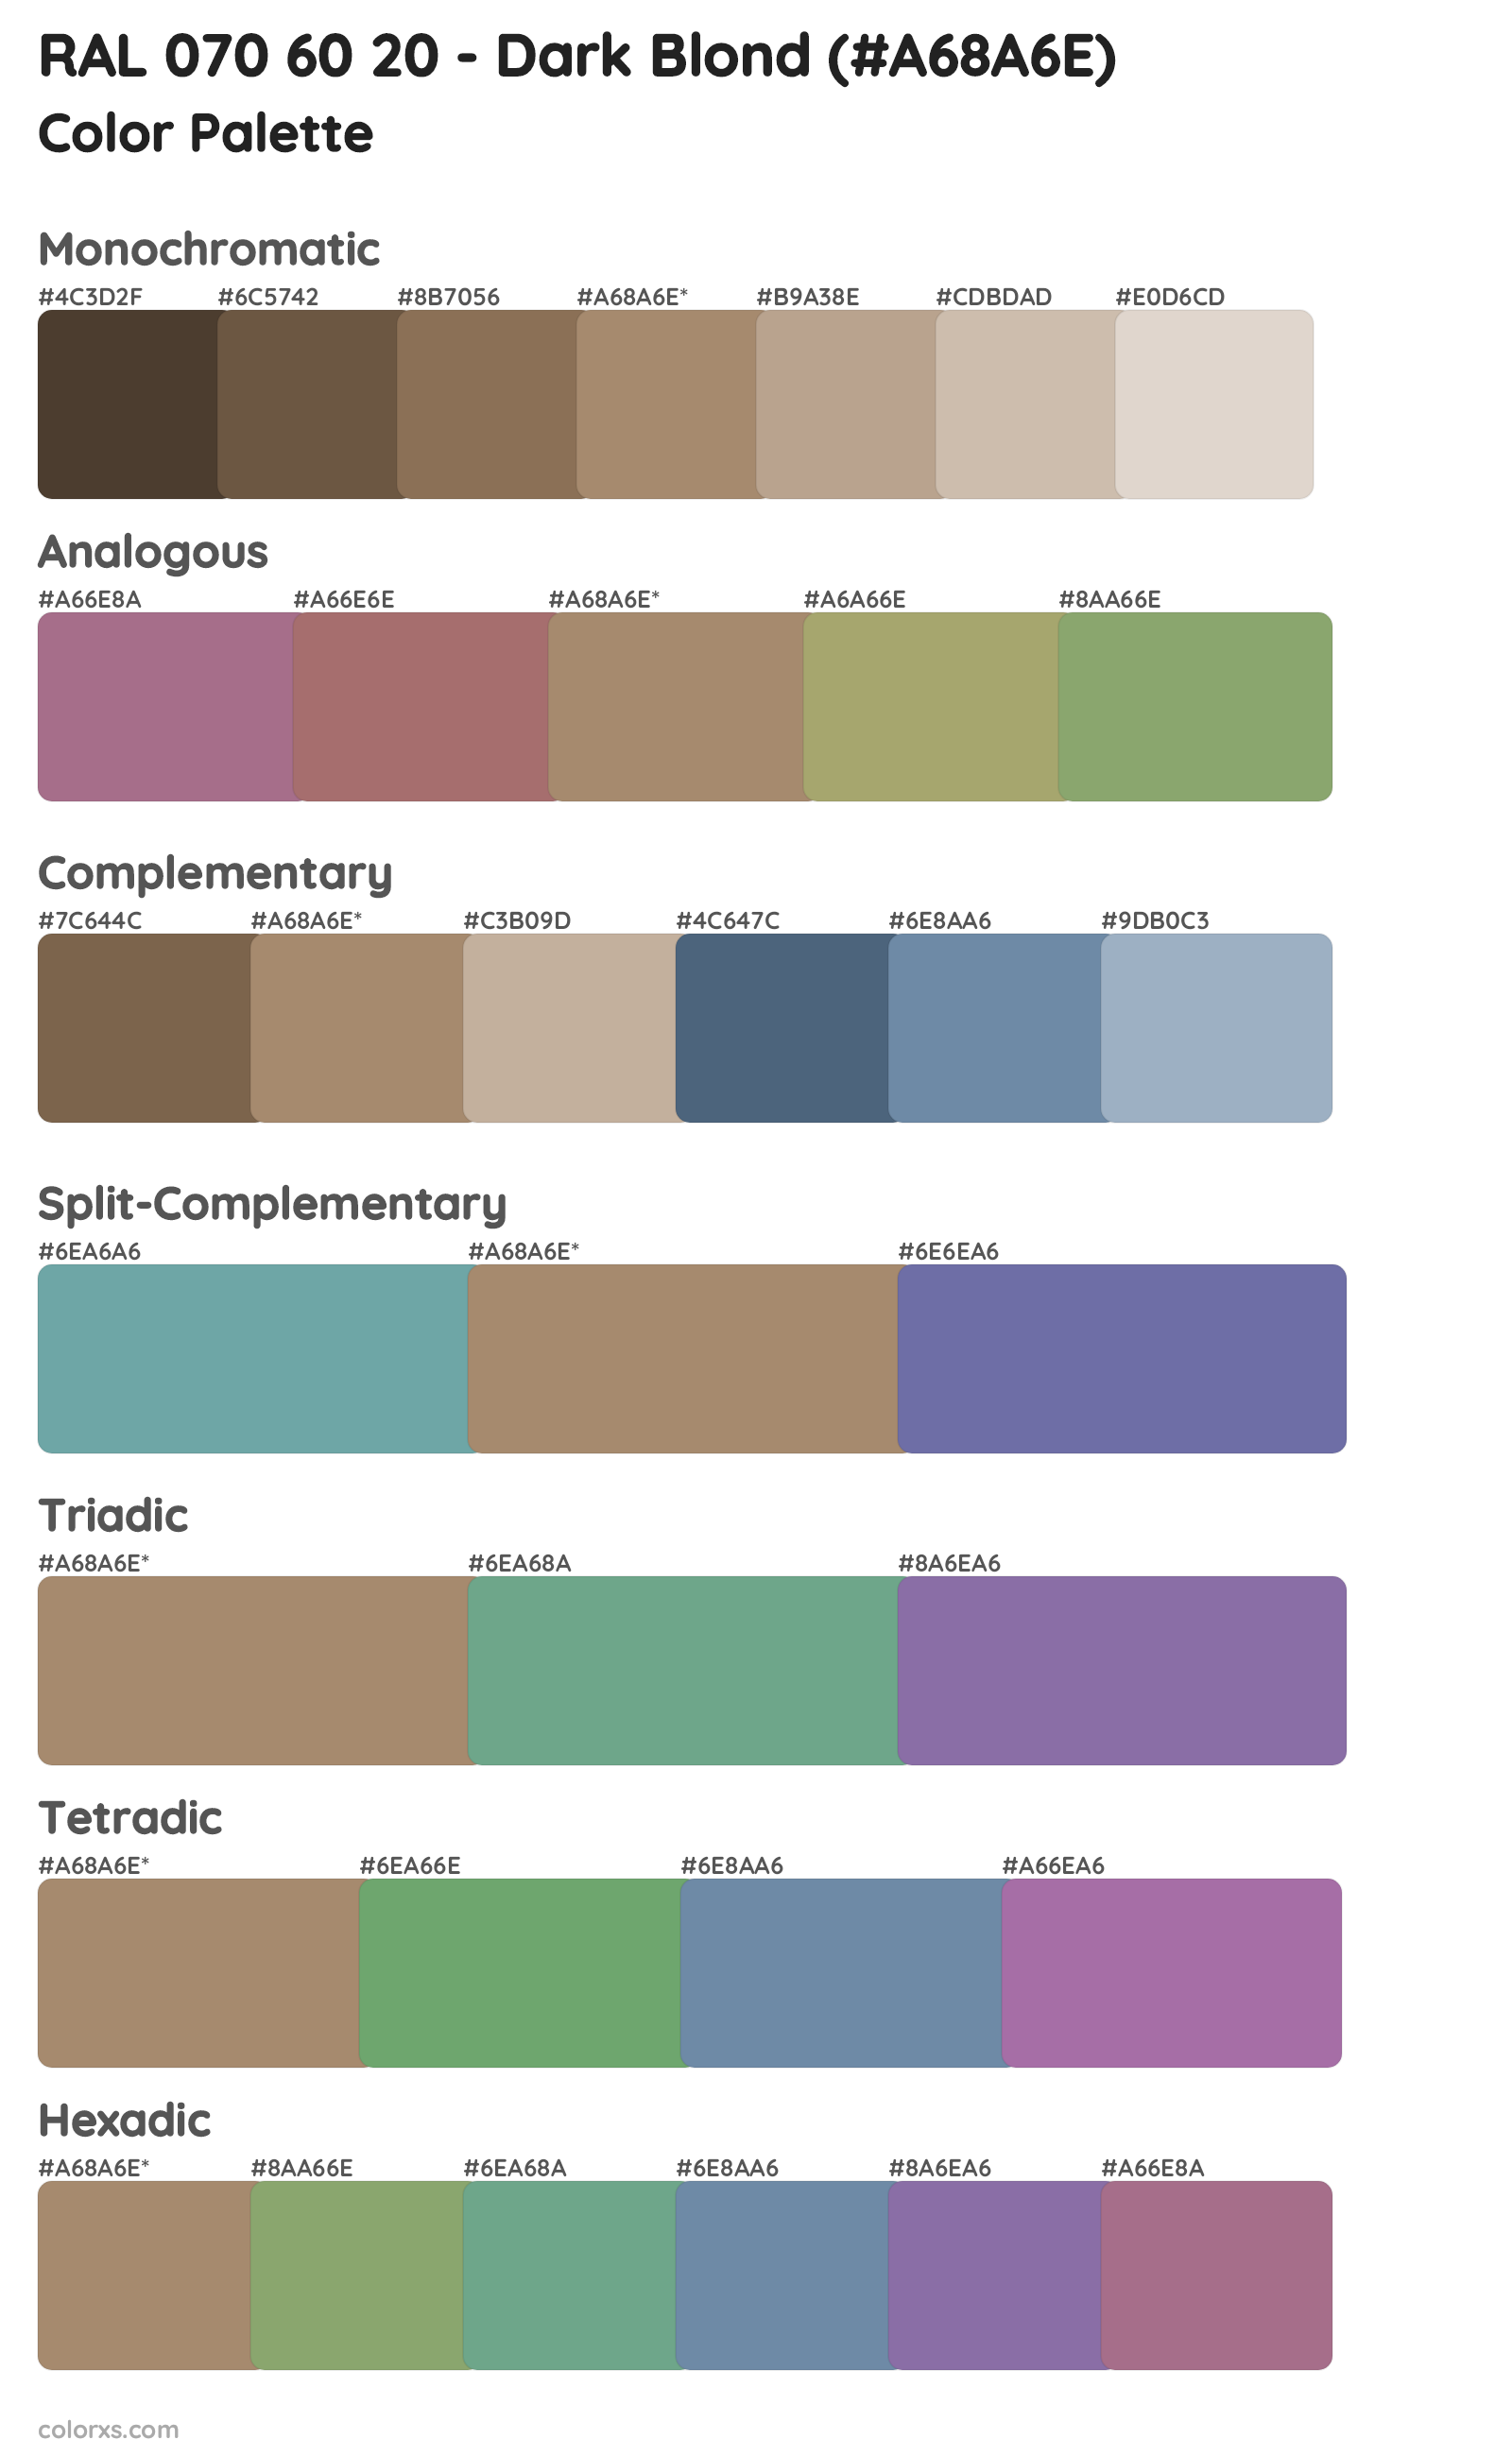 RAL 070 60 20 - Dark Blond Color Scheme Palettes